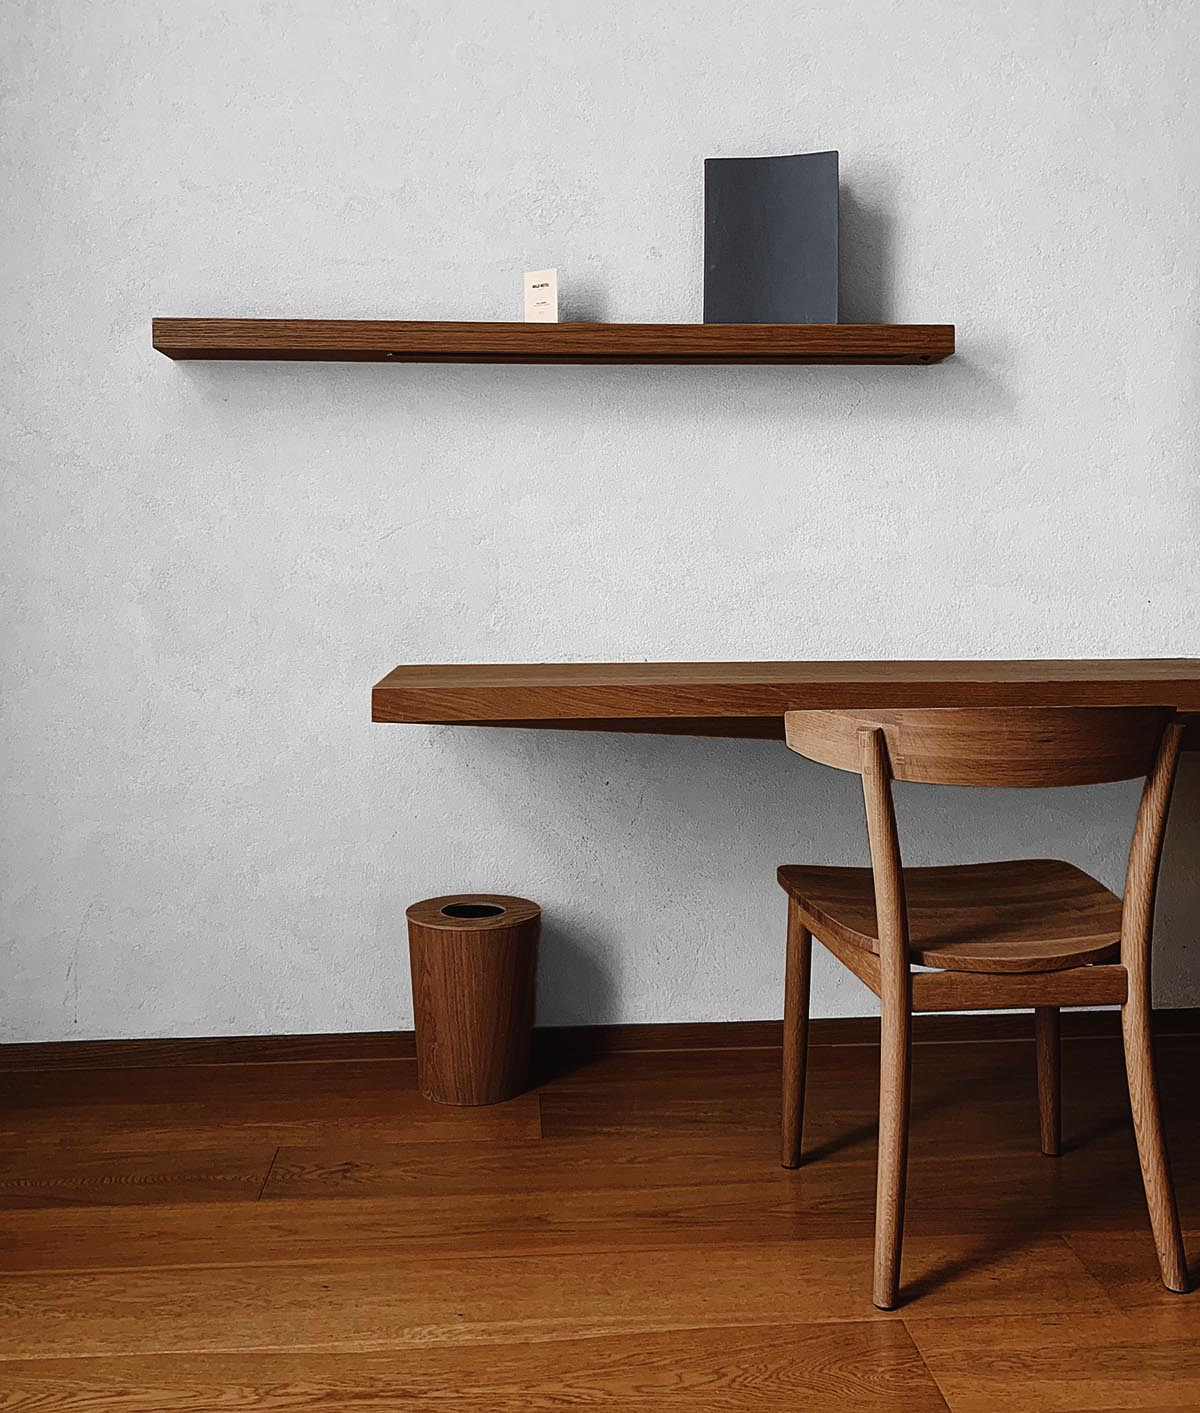 グレーの壁紙+暗い茶系の木目家具